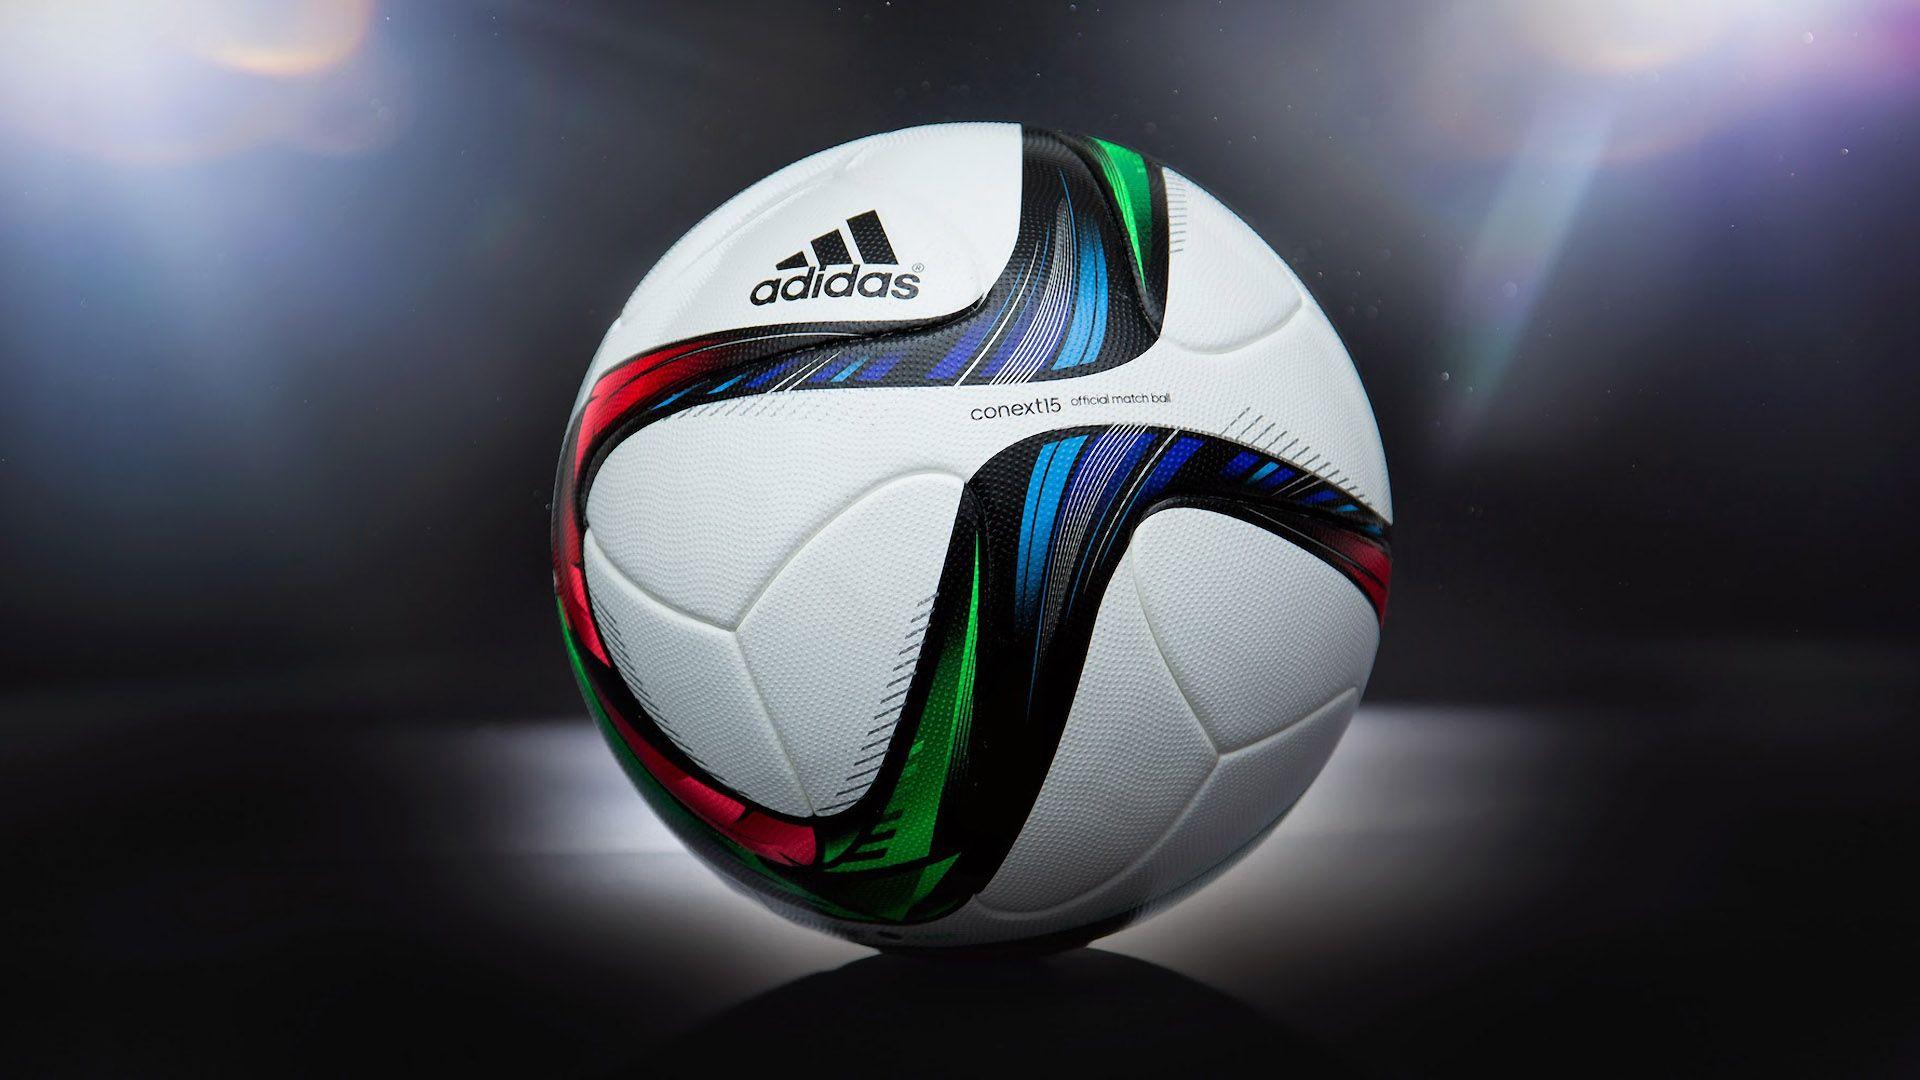 Adidas Soccer Ball Wallpaper HD 61936. Best Free Desktop HD Wallpaper